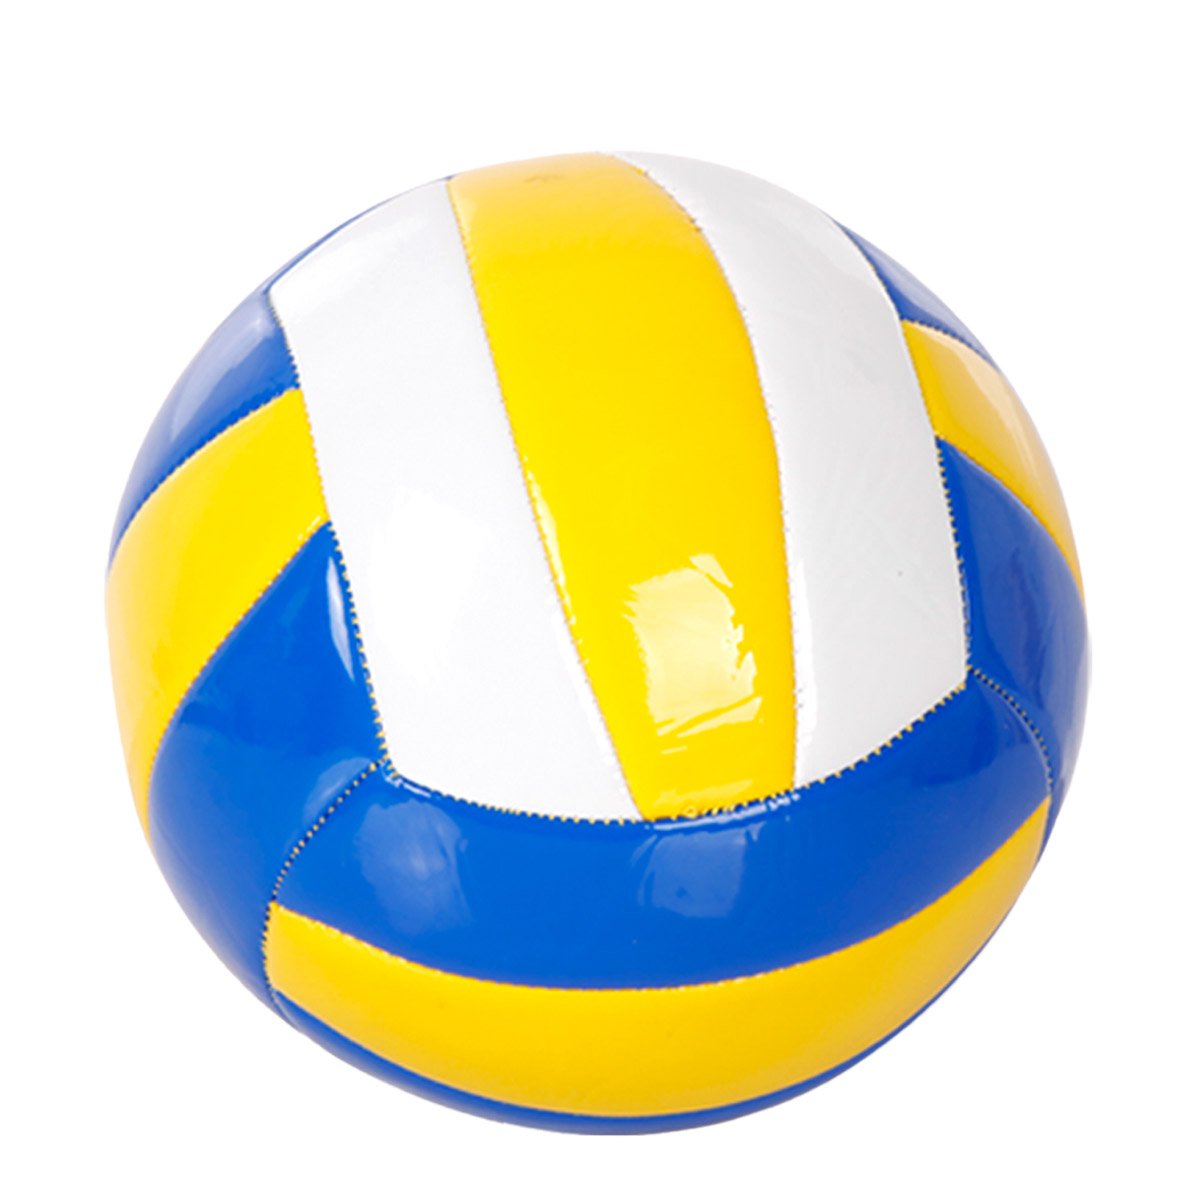 Palla da Pallavolo o Beach Volley per Training Sport e Tempo Libero Colore Blu Biianco e Giallo Diametro 21cm